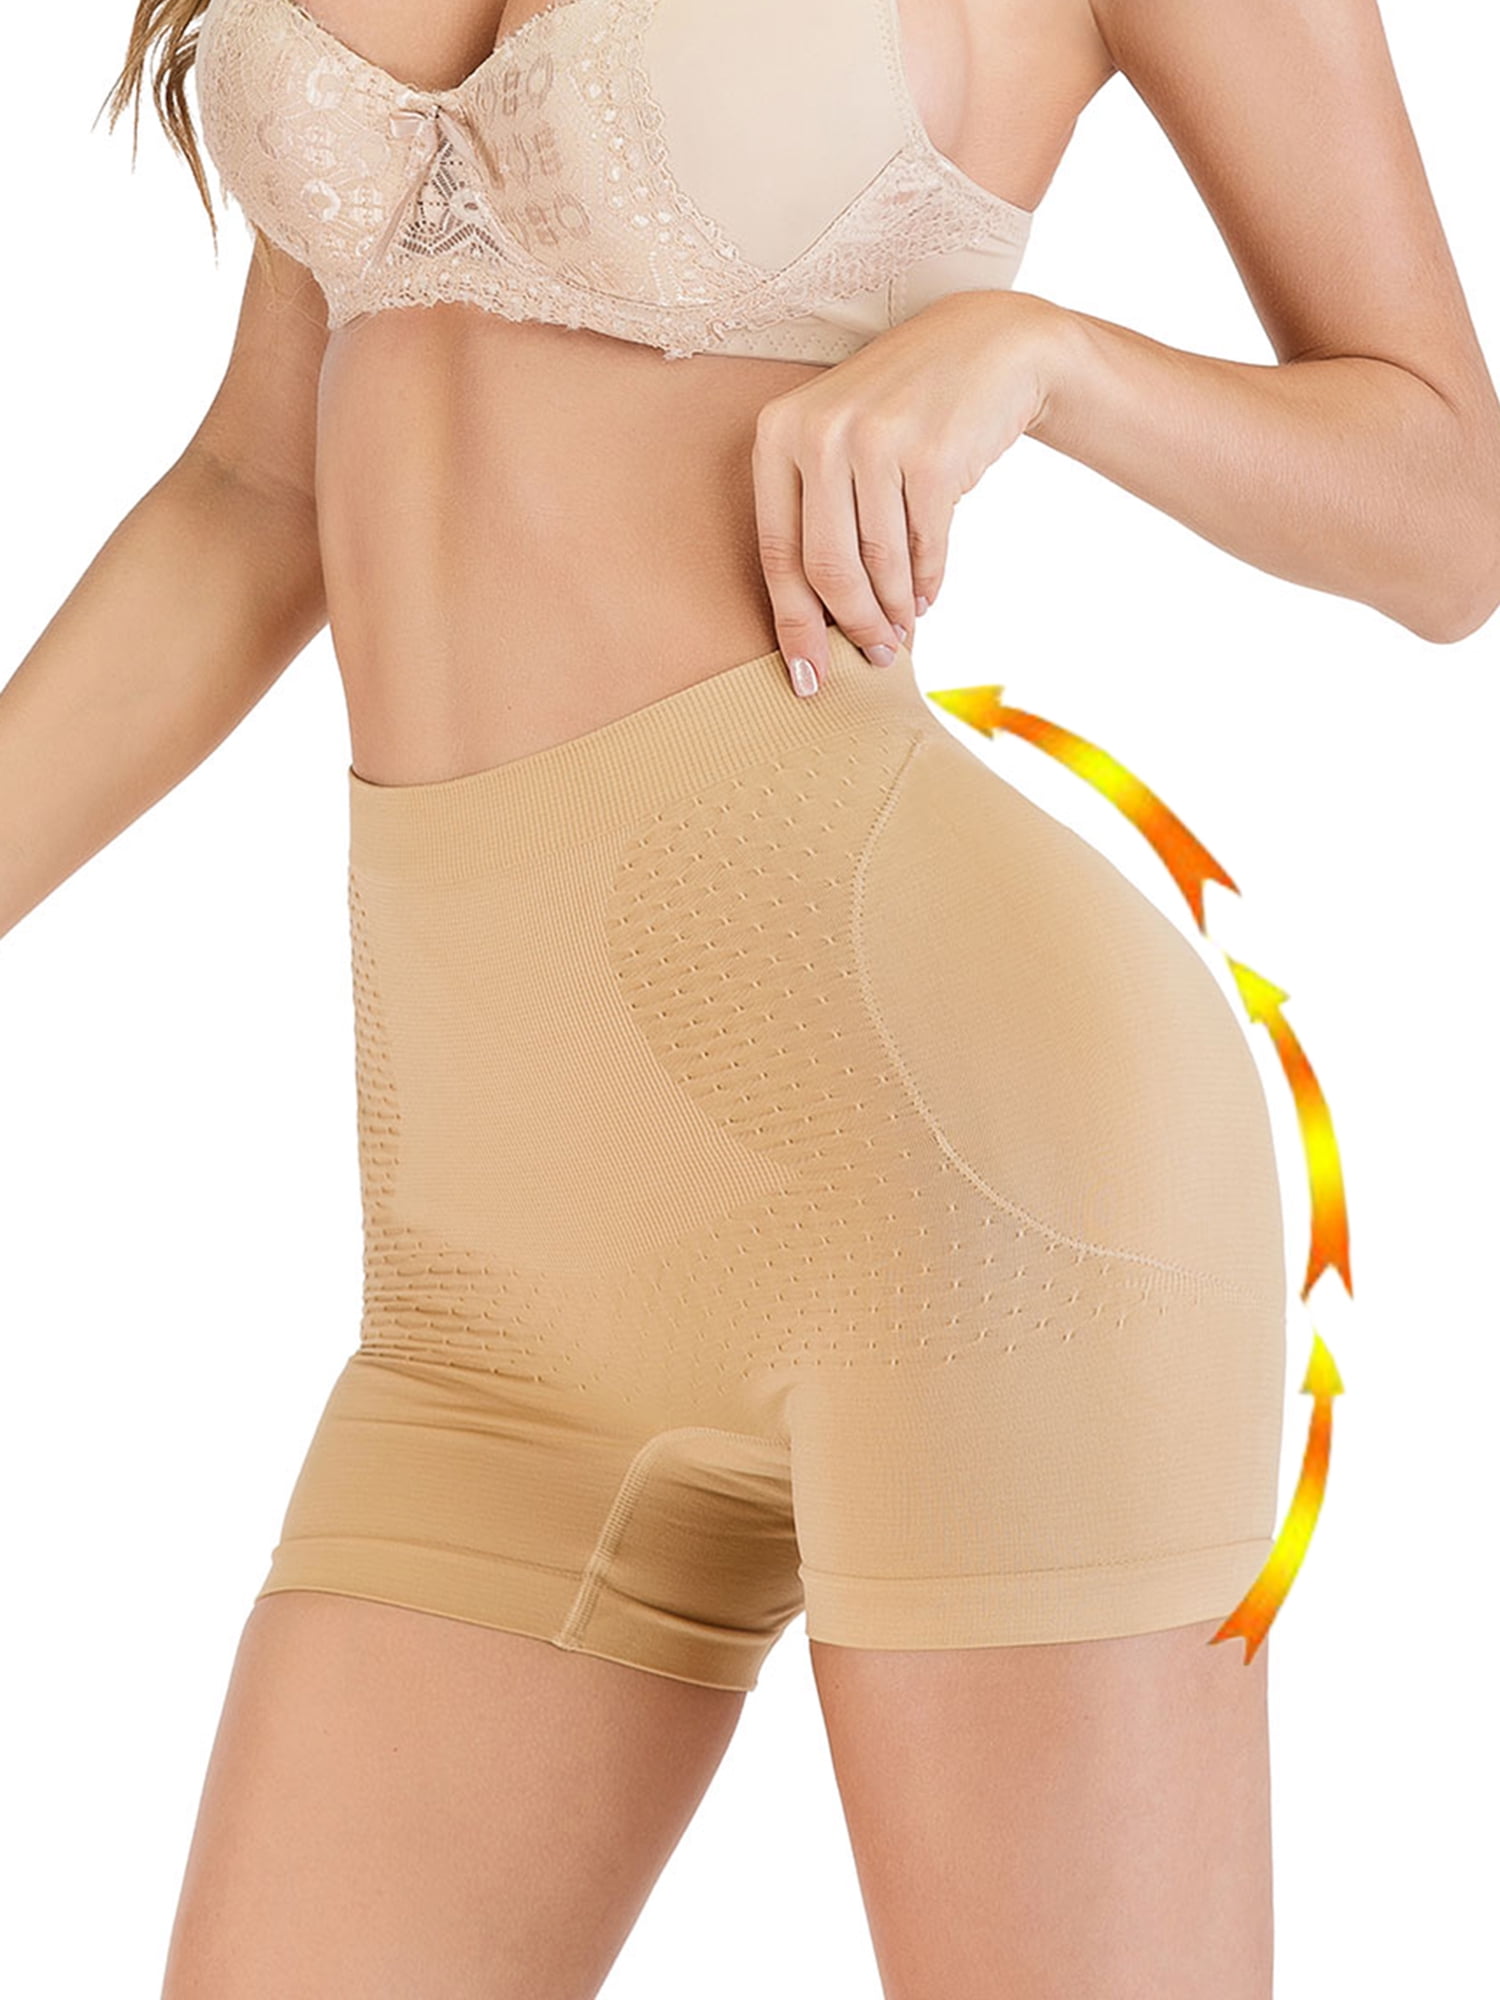 Women's Butt Lifter Hip Enhancer Tummy Control Shaper High Waist Underwear Panty 